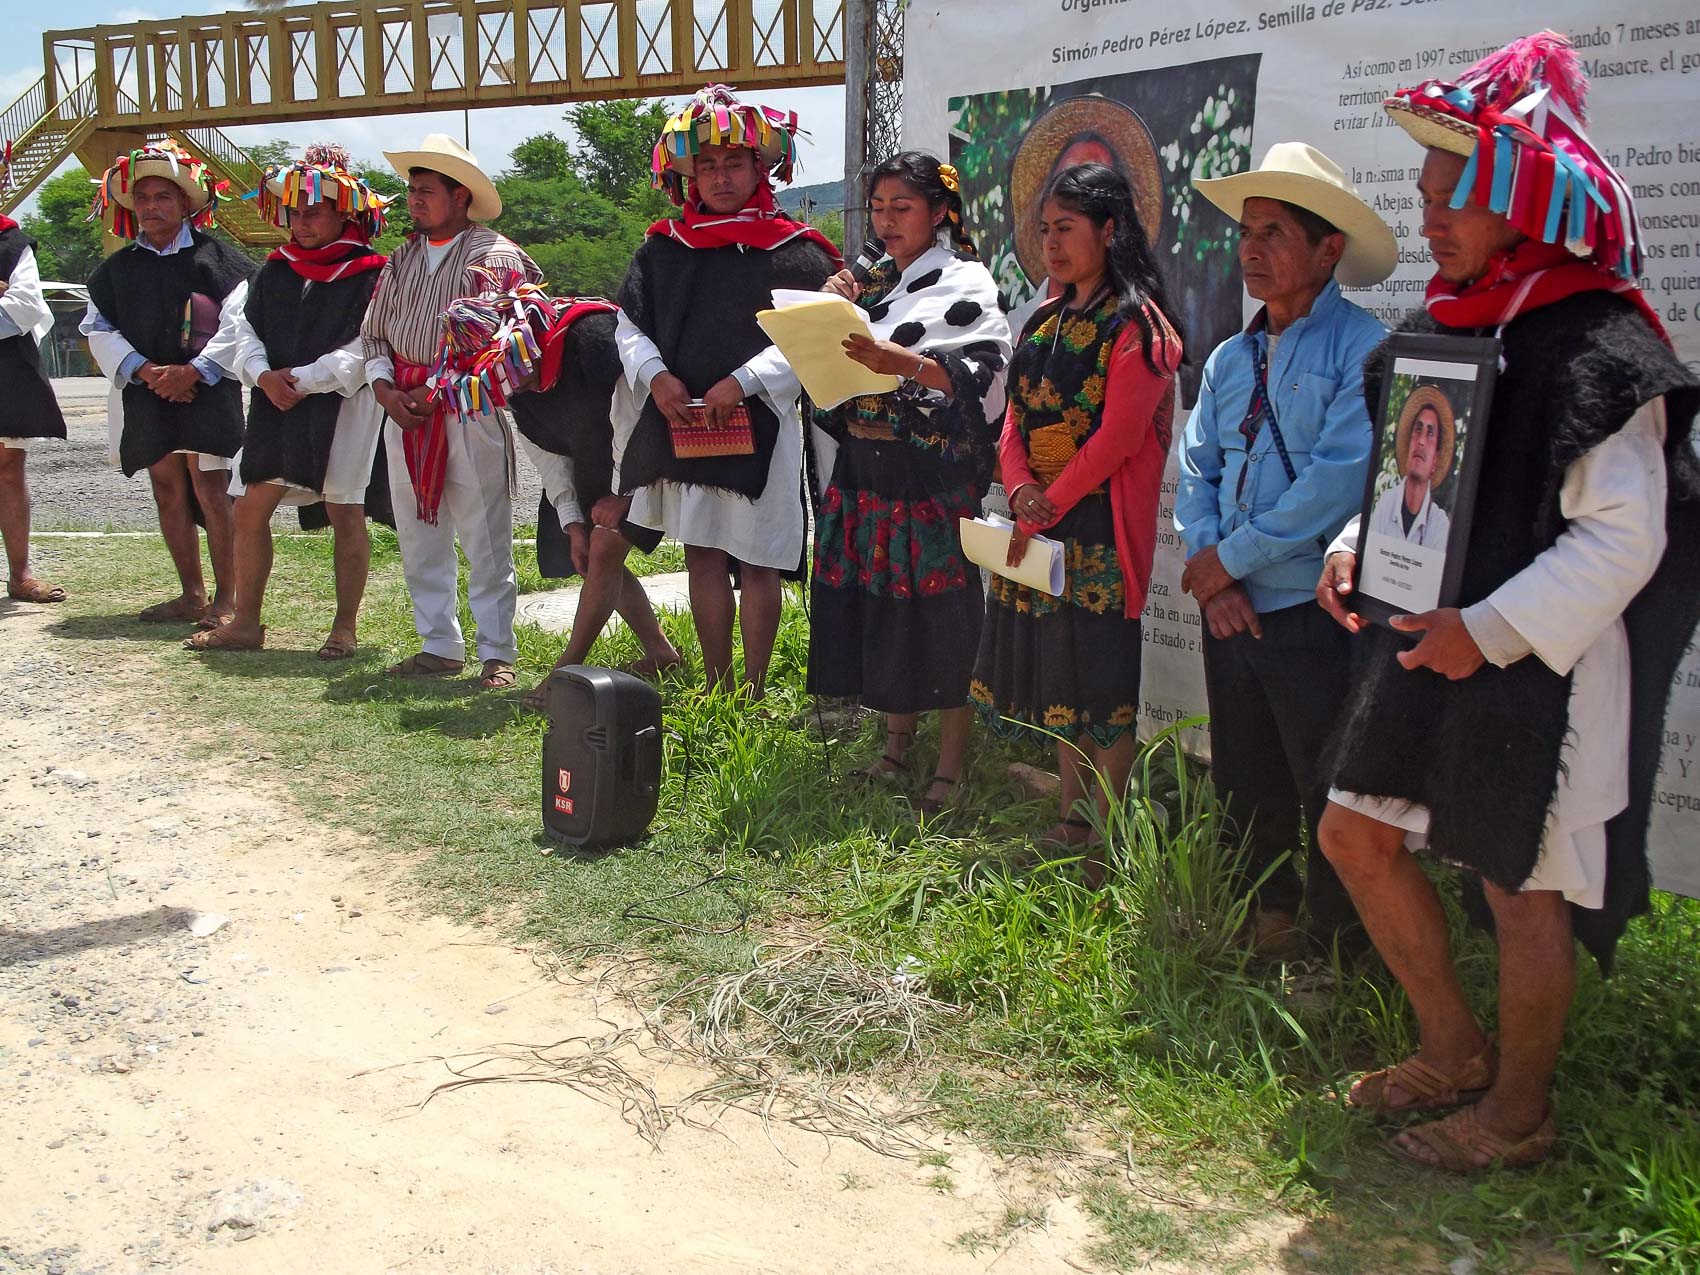 Ein Jahr nach der Ermordung des Verteidigers Simón Pedro fordern sie weiterhin Gerechtigkeit © SIPAZ